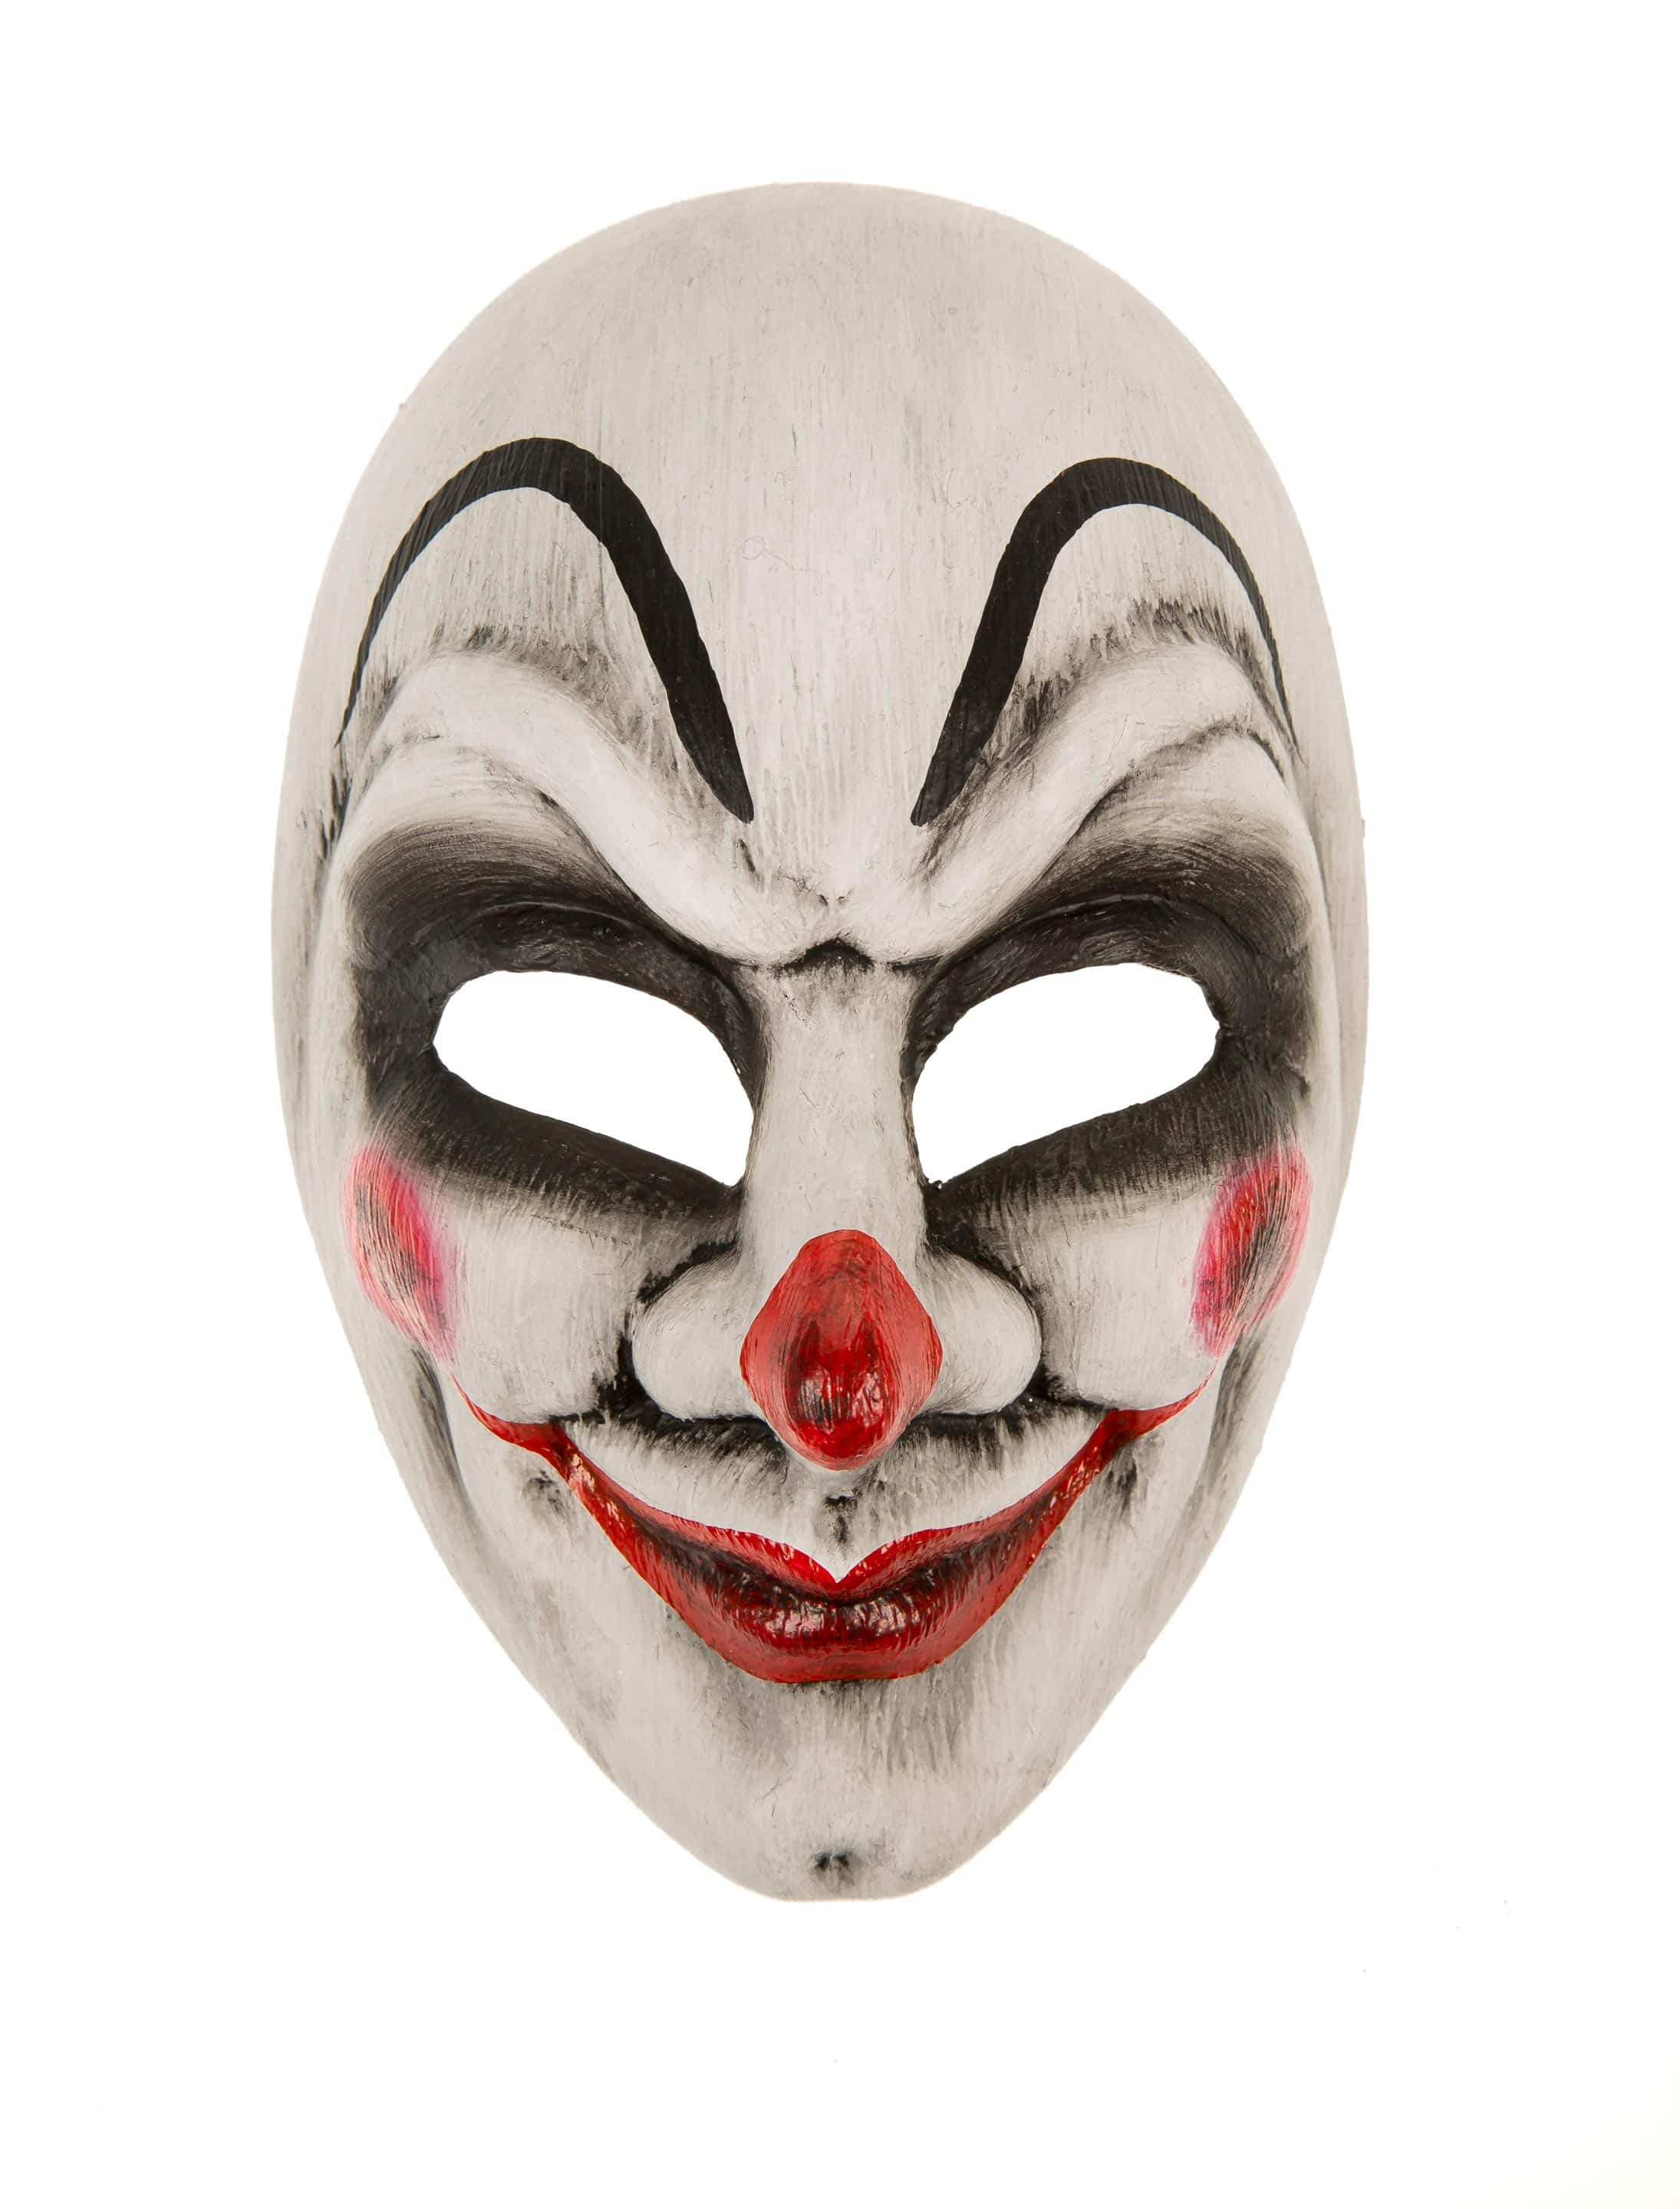 Maske gruseliger Clown schwarz/weiß/rot